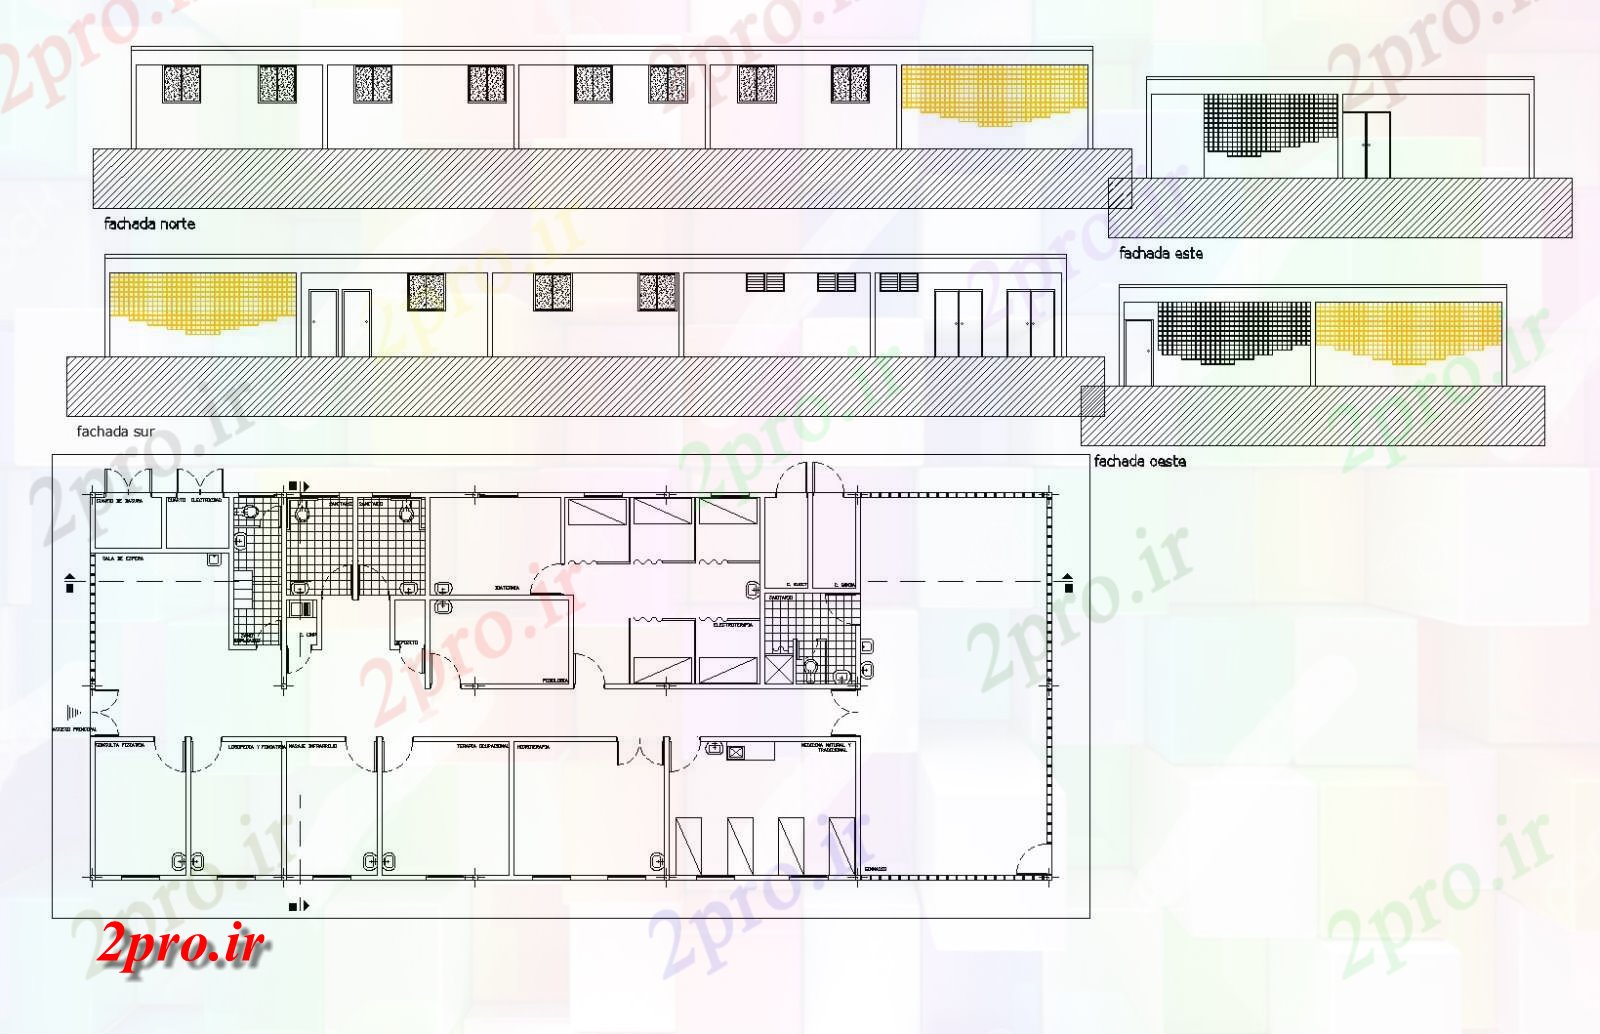 دانلود نقشه ساختمان اداری - تجاری - صنعتی طرحی واحد پزشکی و نما 12 در 30 متر (کد81335)